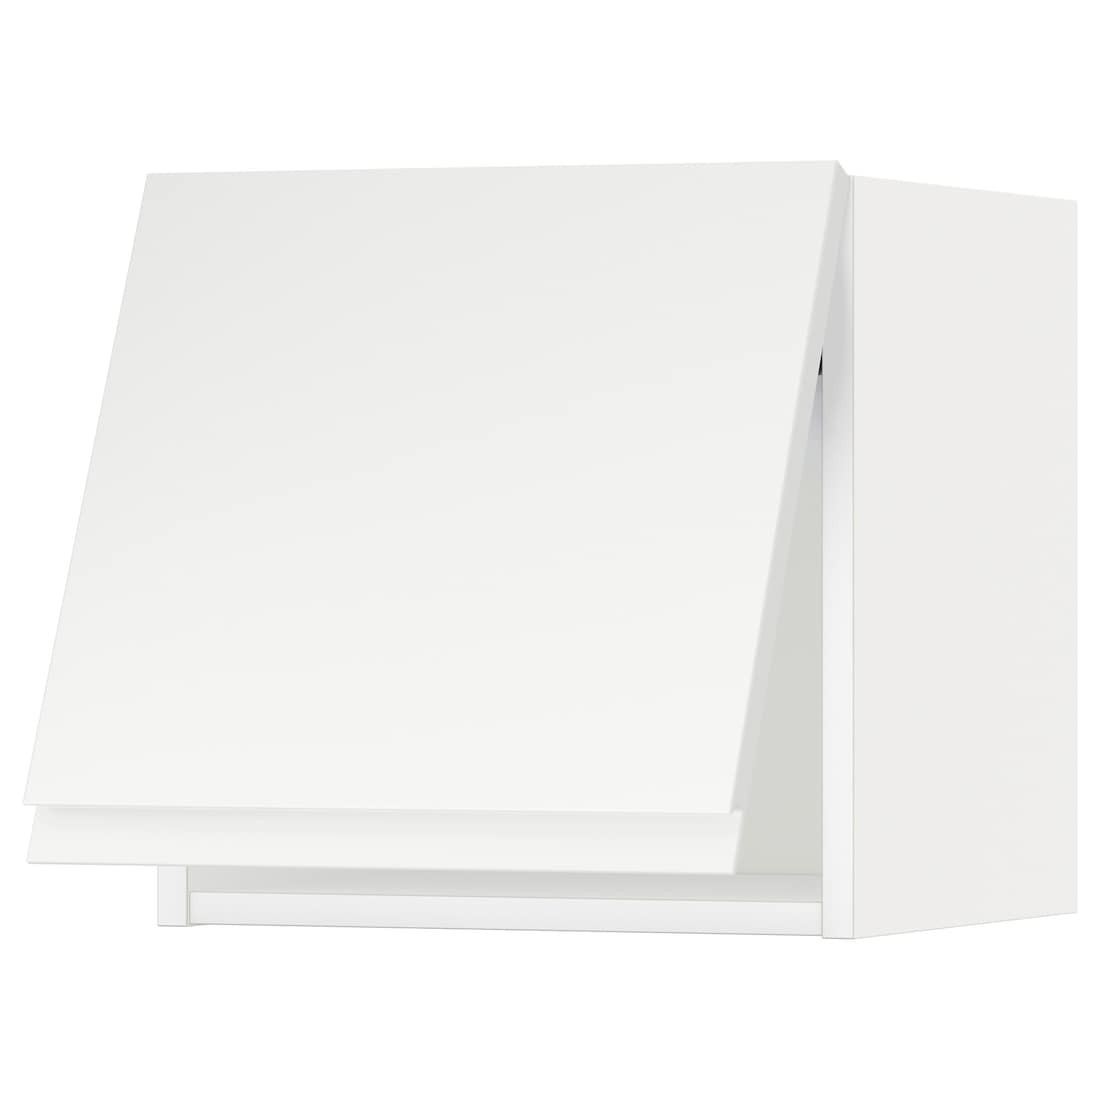 IKEA METOD МЕТОД Навесной горизонтальный шкаф, белый / Voxtorp матовый белый, 40x40 см 09391787 | 093.917.87